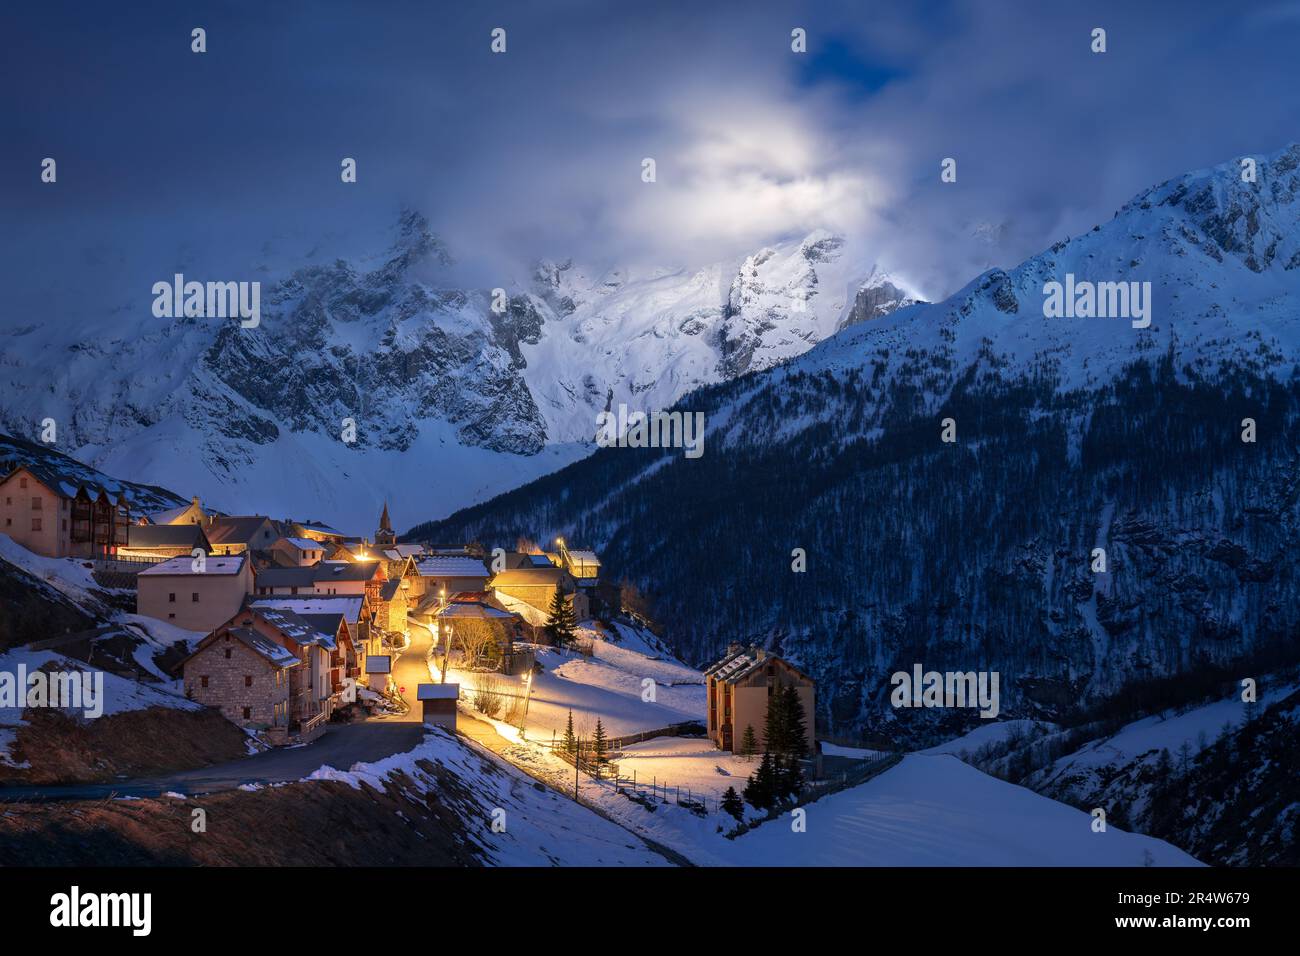 Ecrins Nationalpark mit dem beleuchteten Dorf Le Chazelet und dem Gipfel La Meije bei Nacht. Hautes-Alpes, Französische Alpen, Frankreich Stockfoto